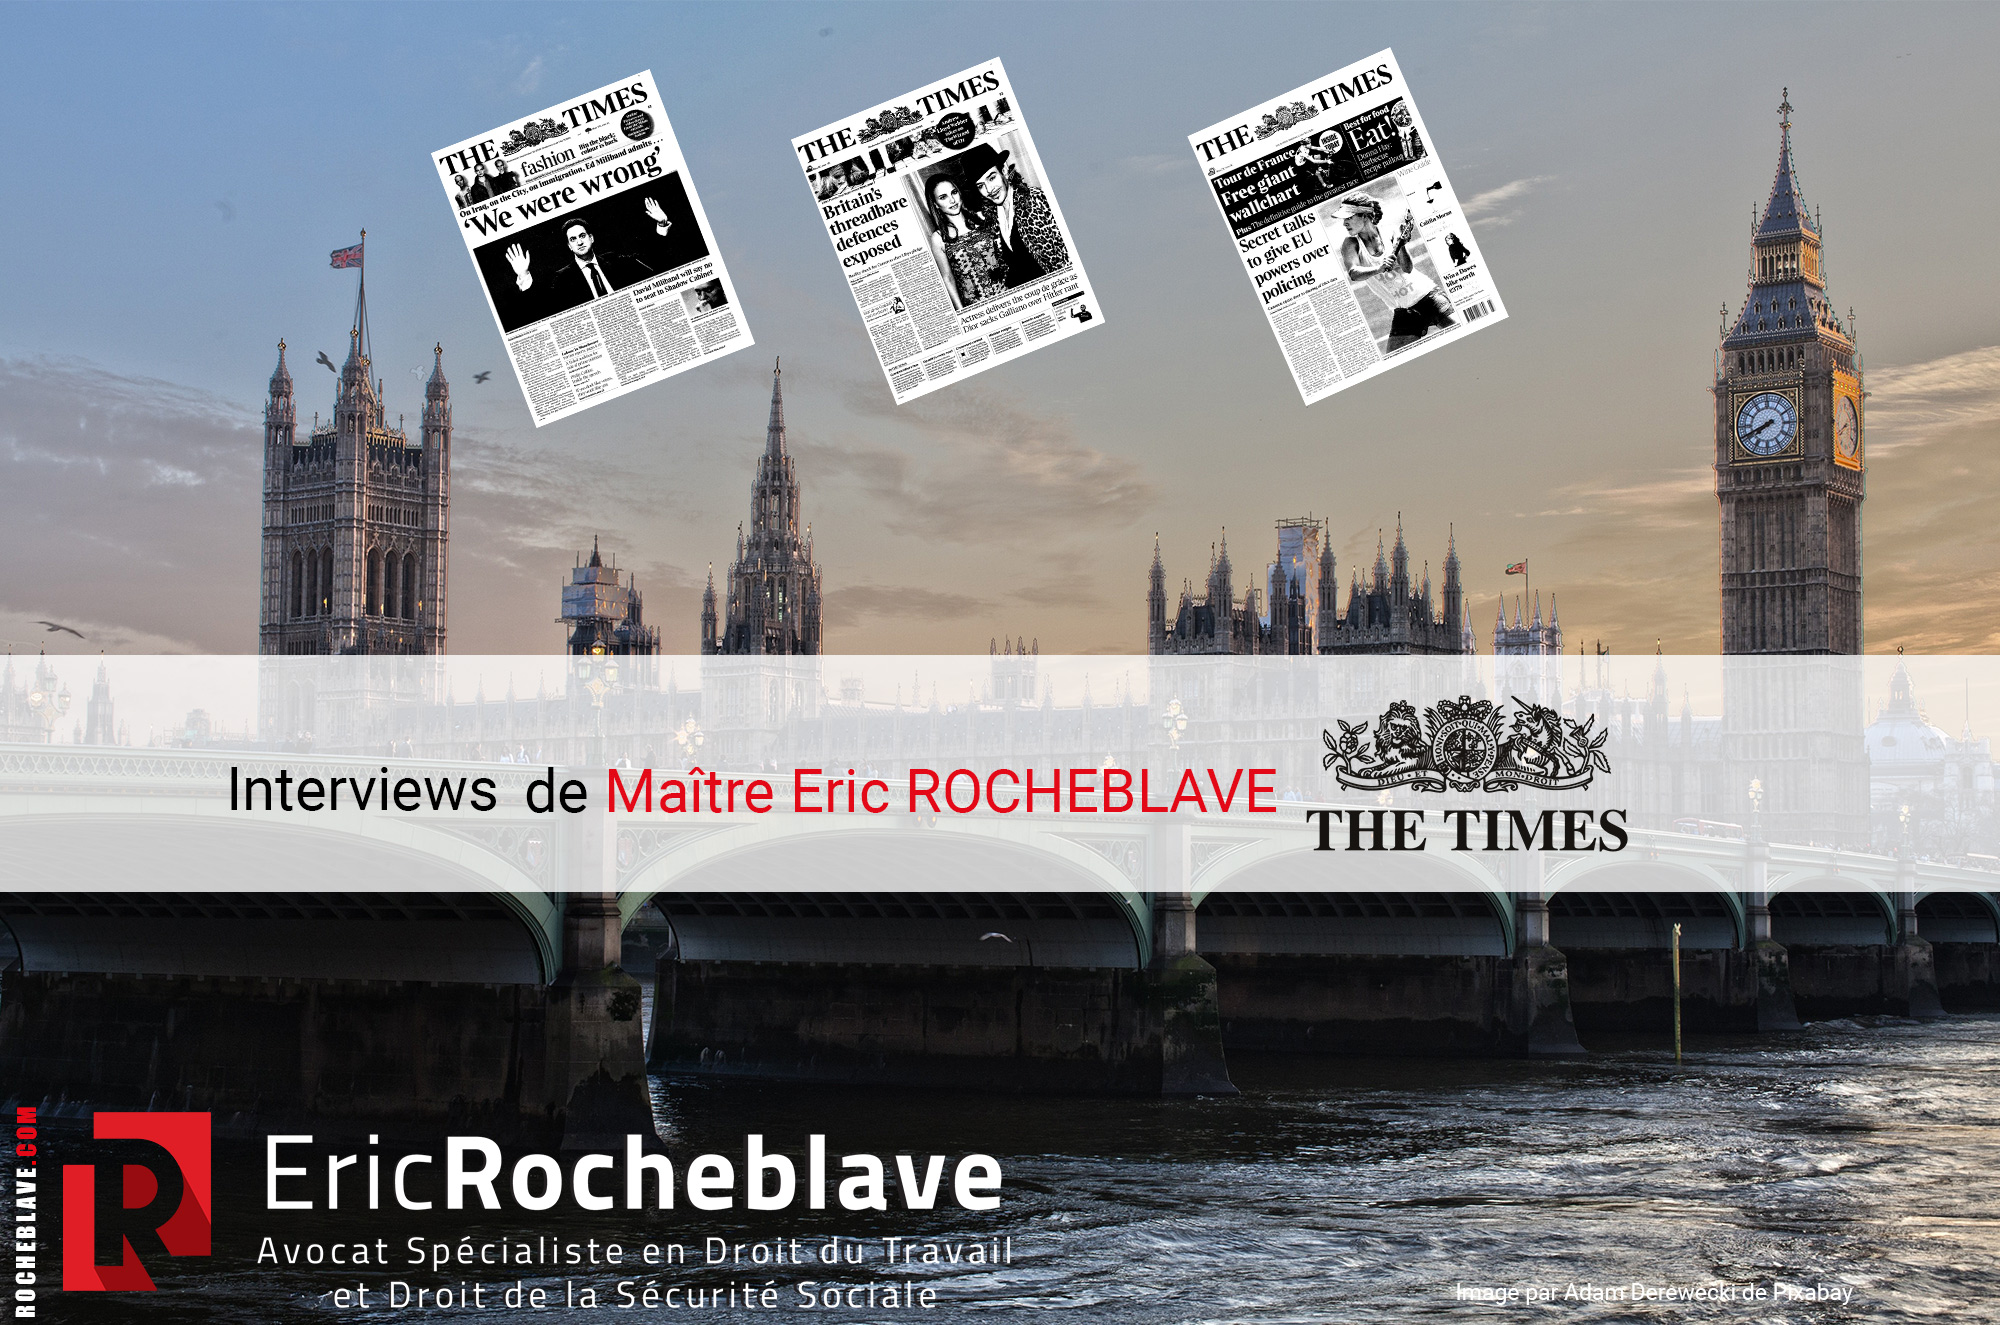 Interviews de Maître Eric ROCHEBLAVE dans THE TIMES